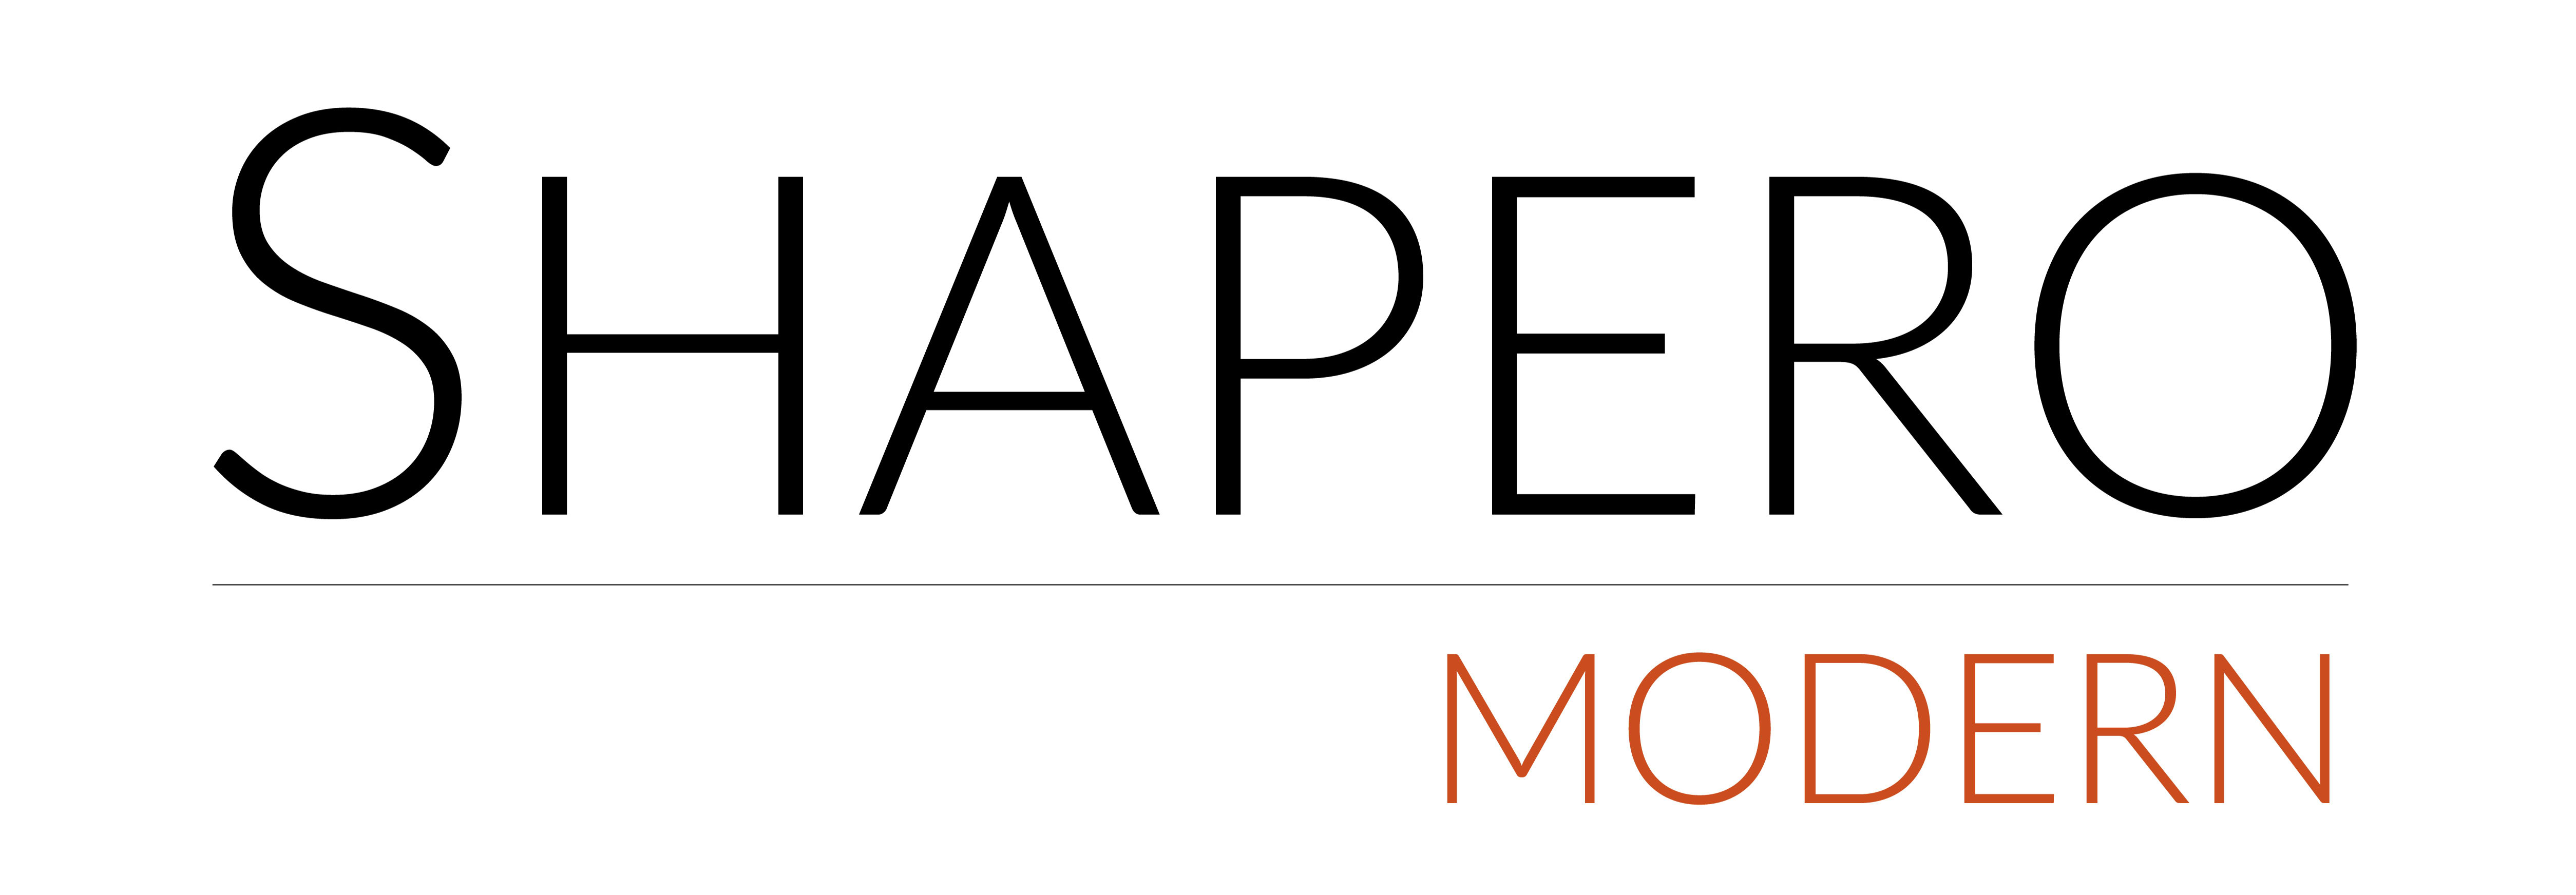 Shapero Modern company logo